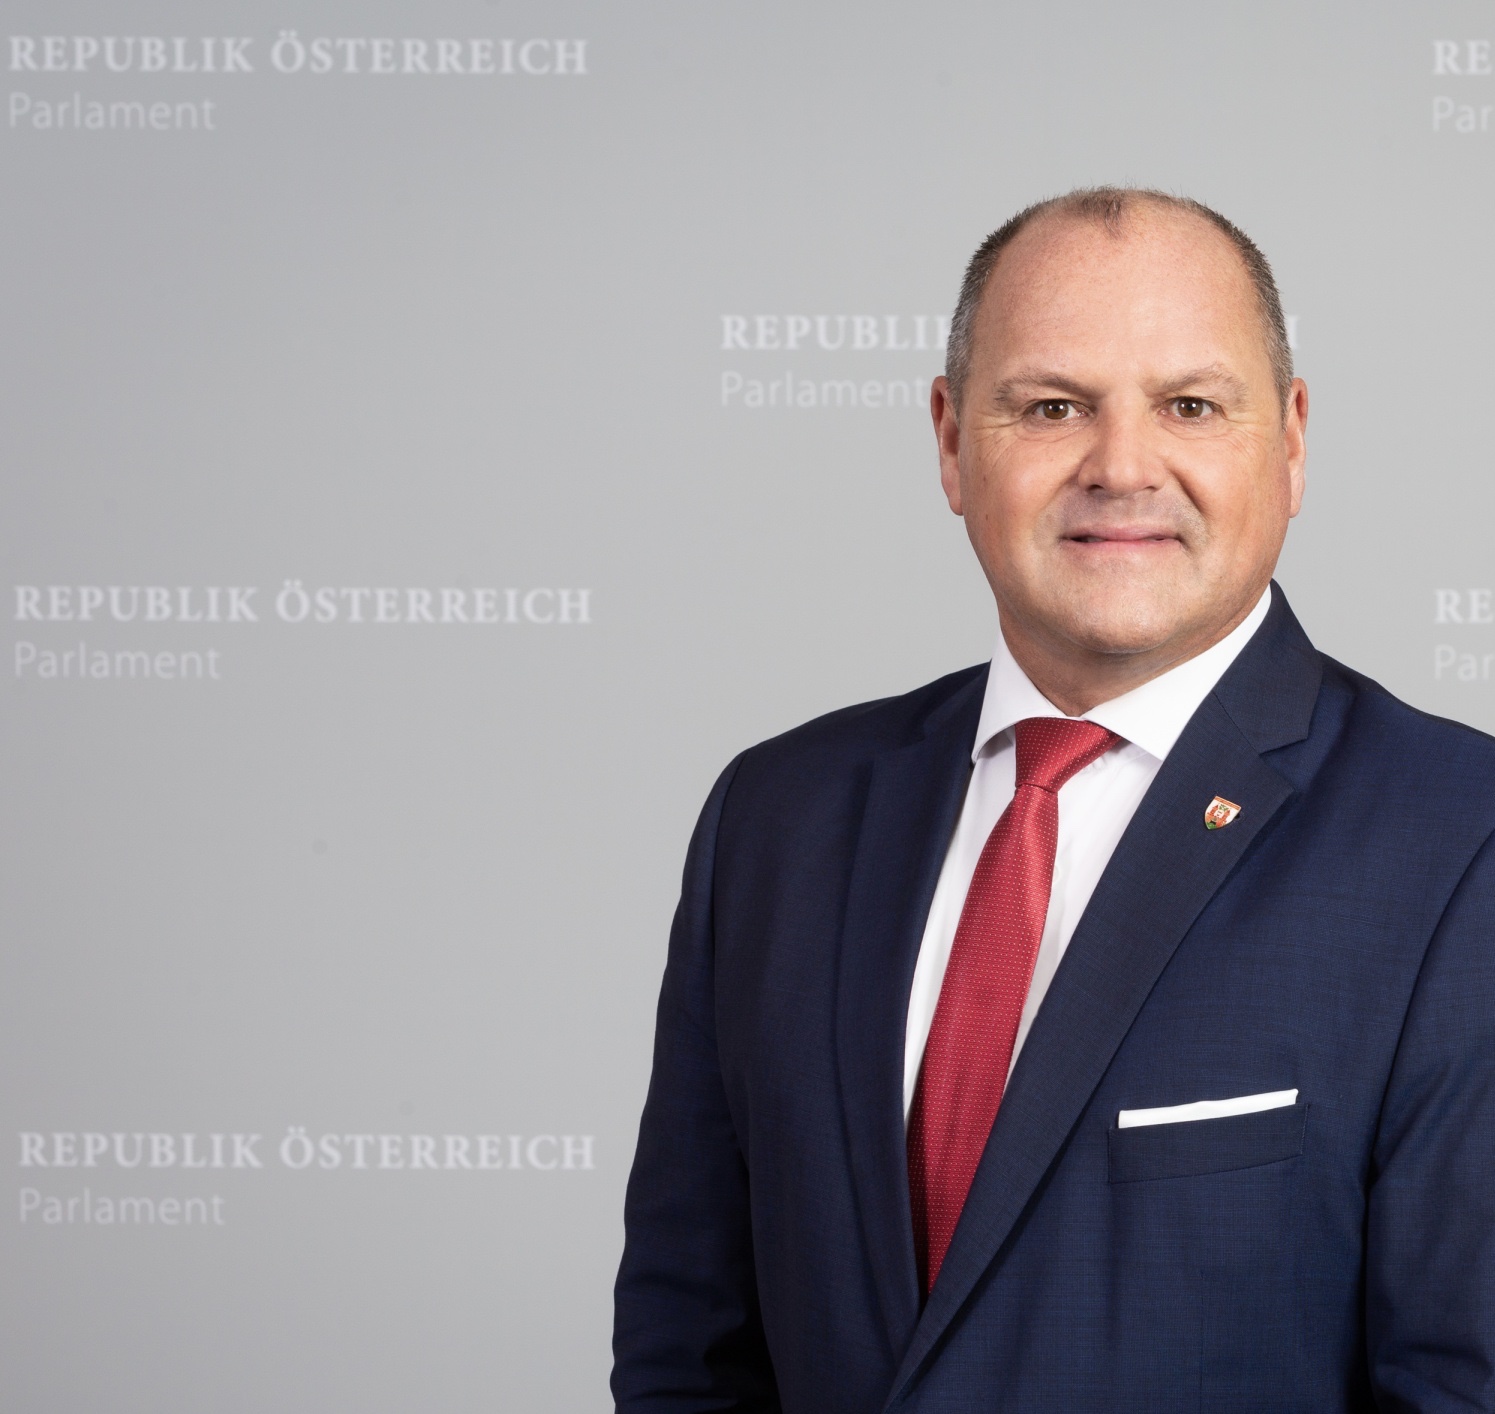 SPÖ-Schroll zu Beeinspruchung des bgld. Raumordnungsgesetzes: Regierung schützt Krisengewinner und behindert sozialen Ausgleich